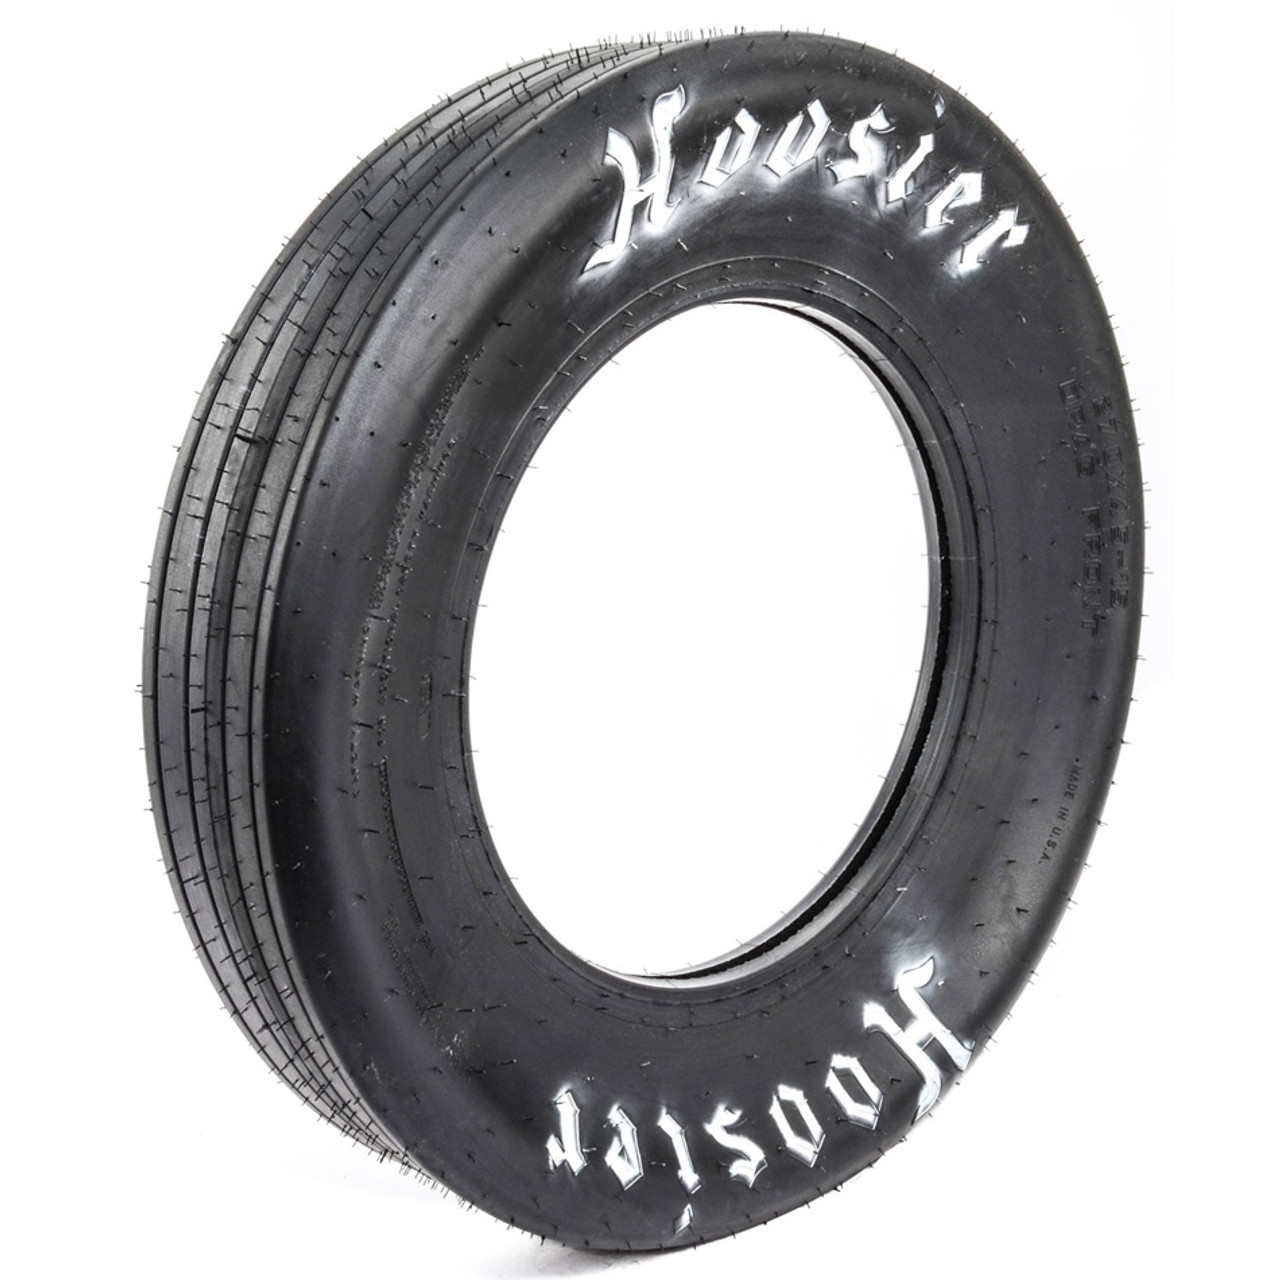 Hoosier 27.5/4.5-17 Front Tire  - HOO18109